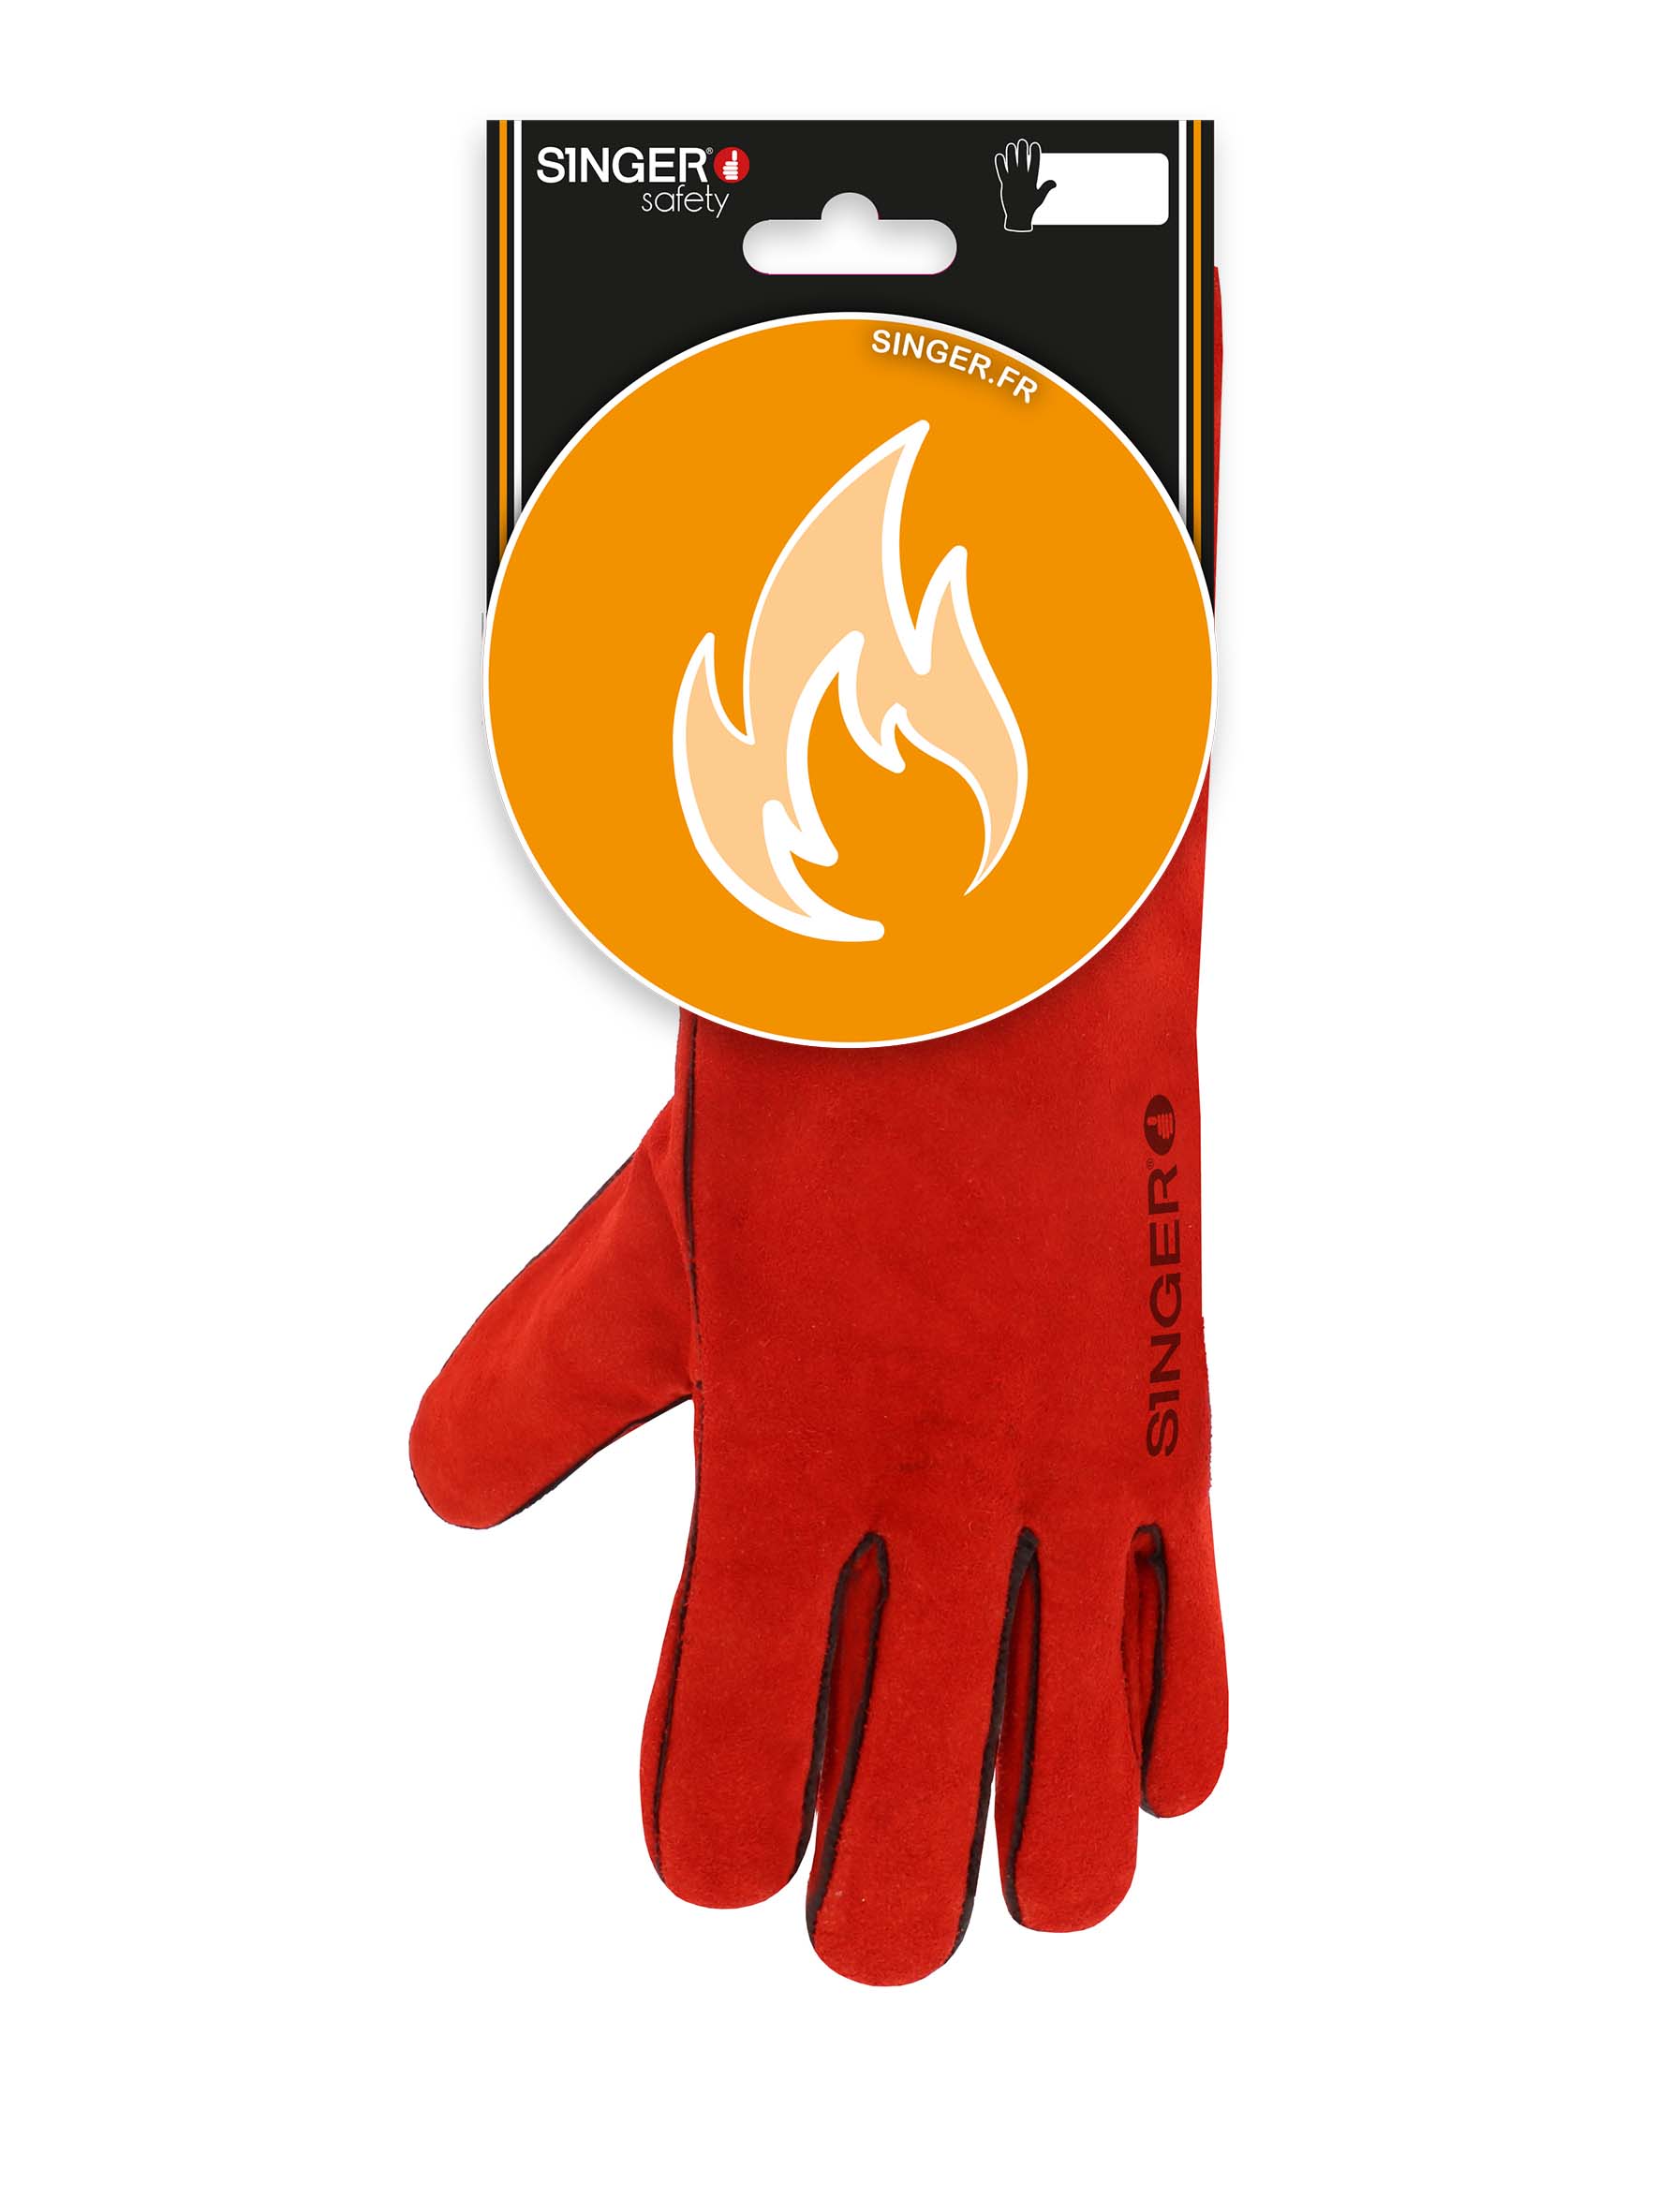 Gant soudeur 51SIREP15 de protection risques thermiques (chaleur